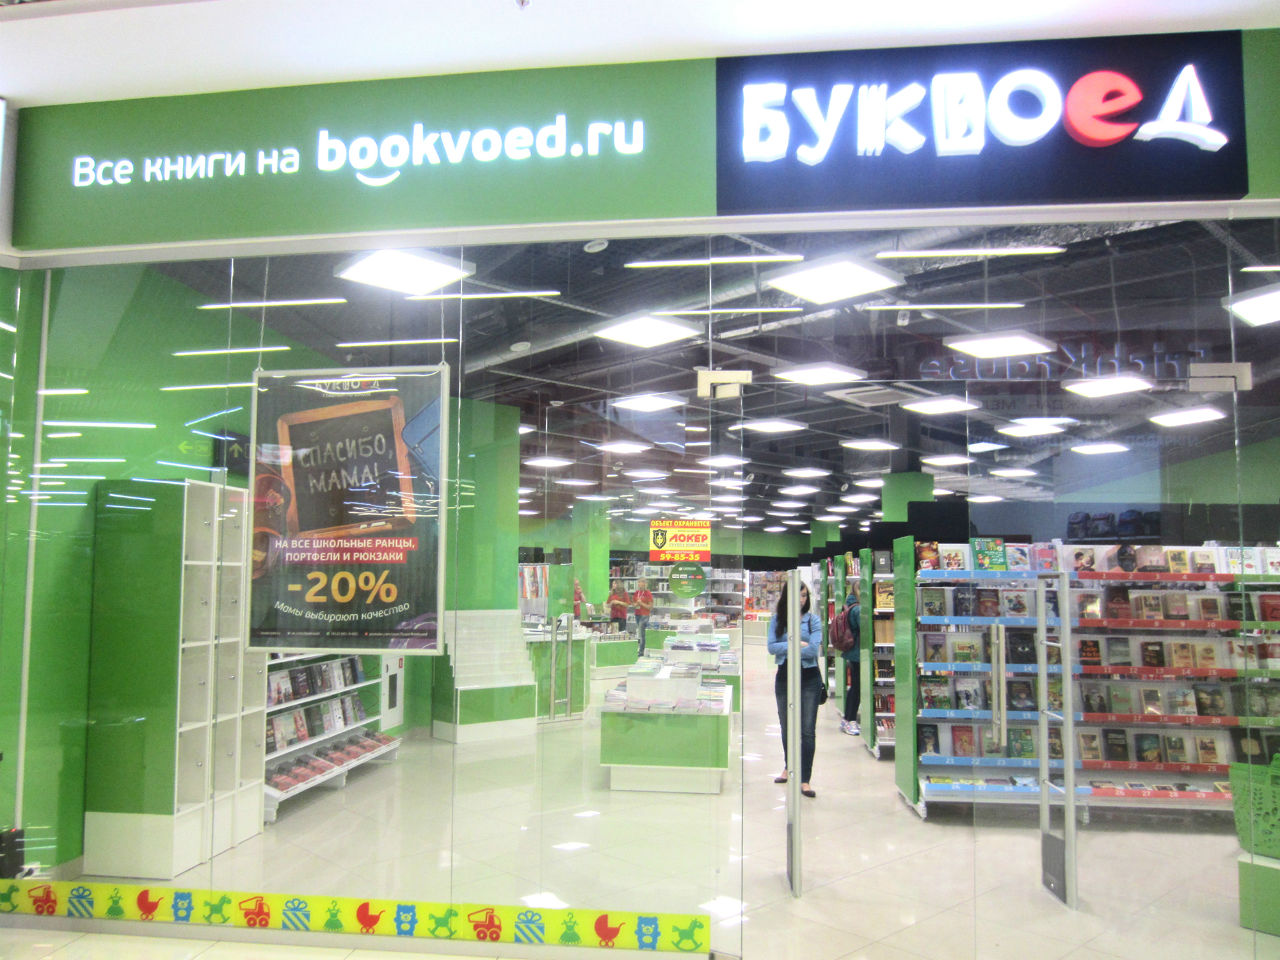 Книжковий магазин «Буквоїд» в місті Гатчині відкрився в ТРК Cubus (GBA- 35 000 кв